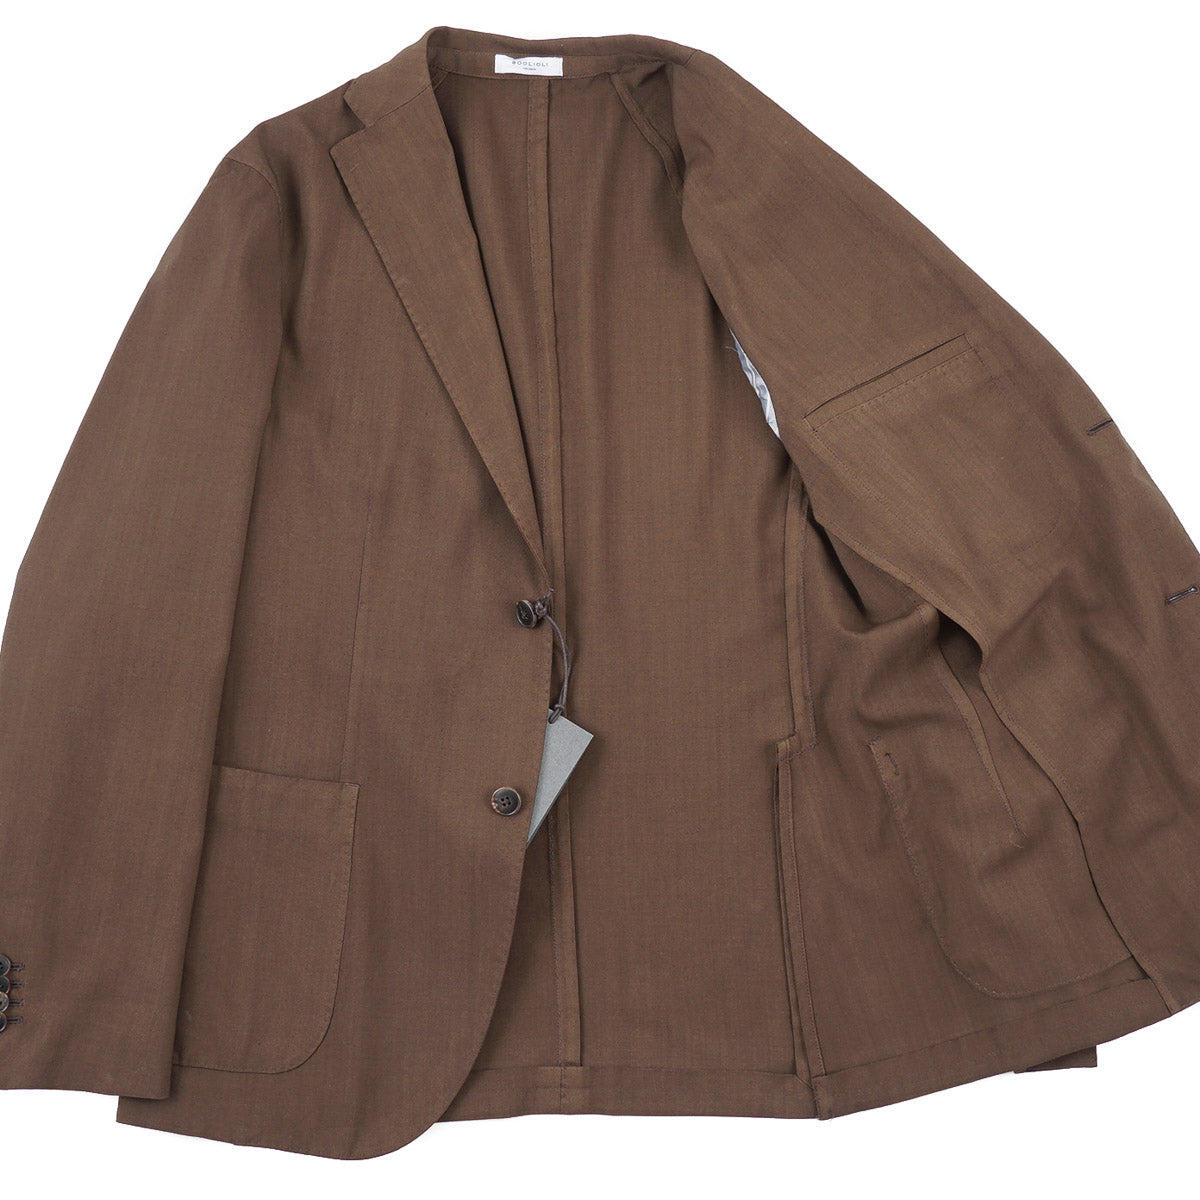 Boglioli Wool 'K Jacket' Sport Coat – Top Shelf Apparel